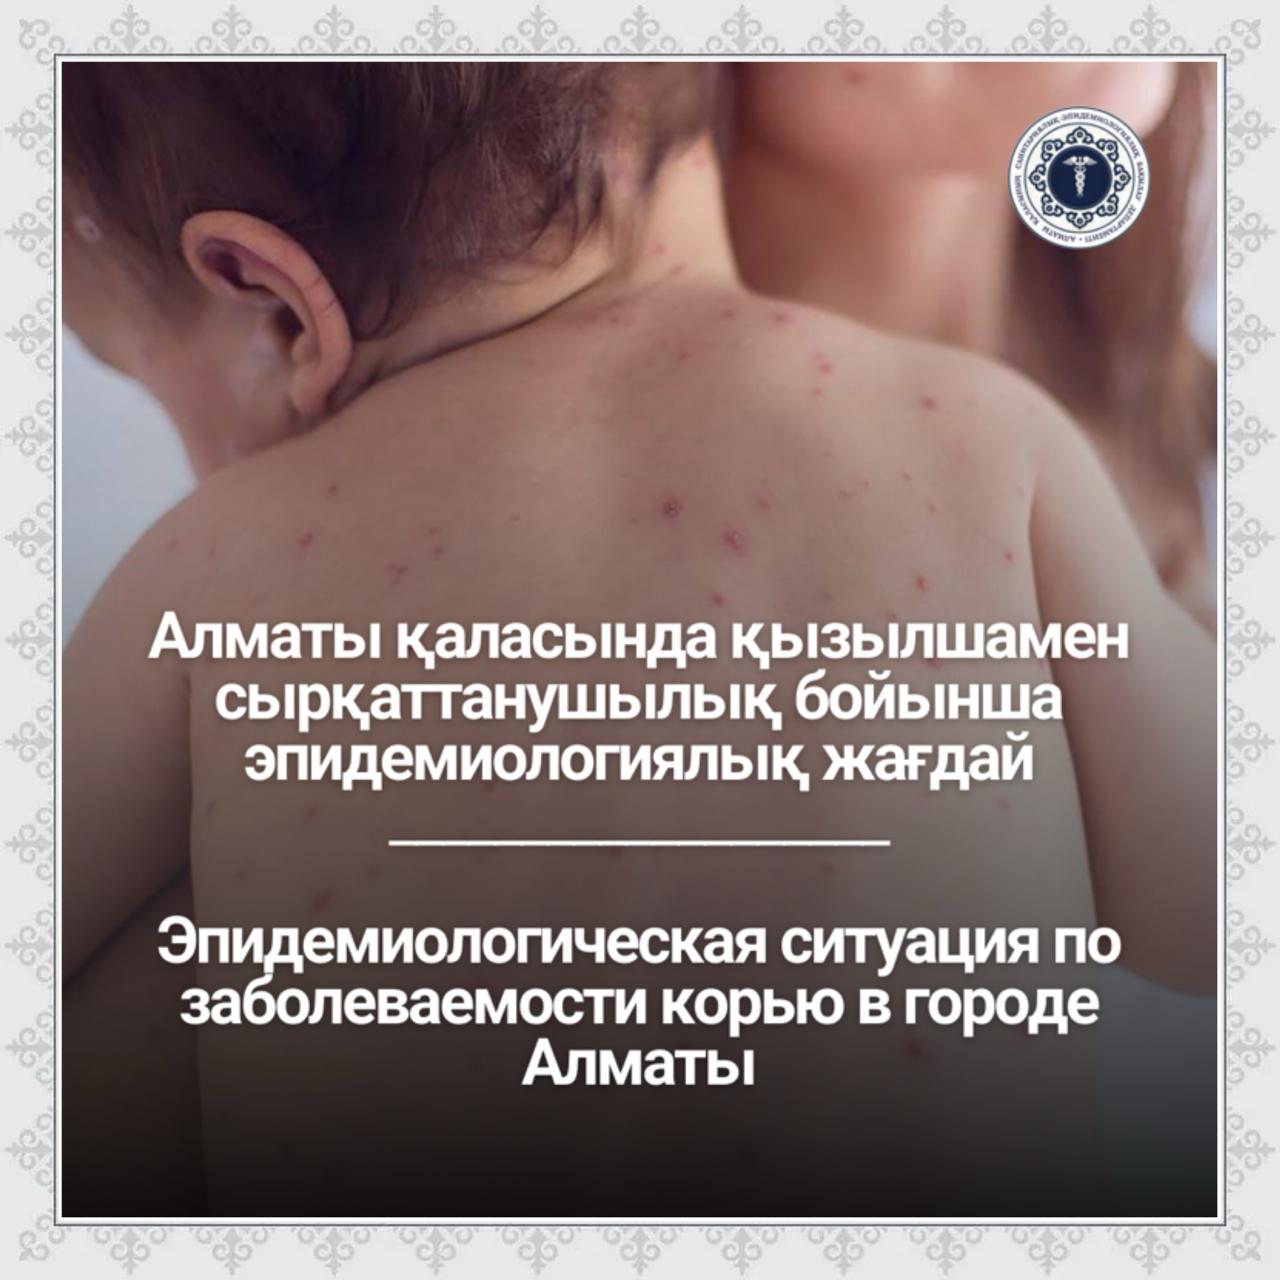 Алматы қаласында қызылшамен сырқаттанушылық бойынша эпидемиологиялық жағдай